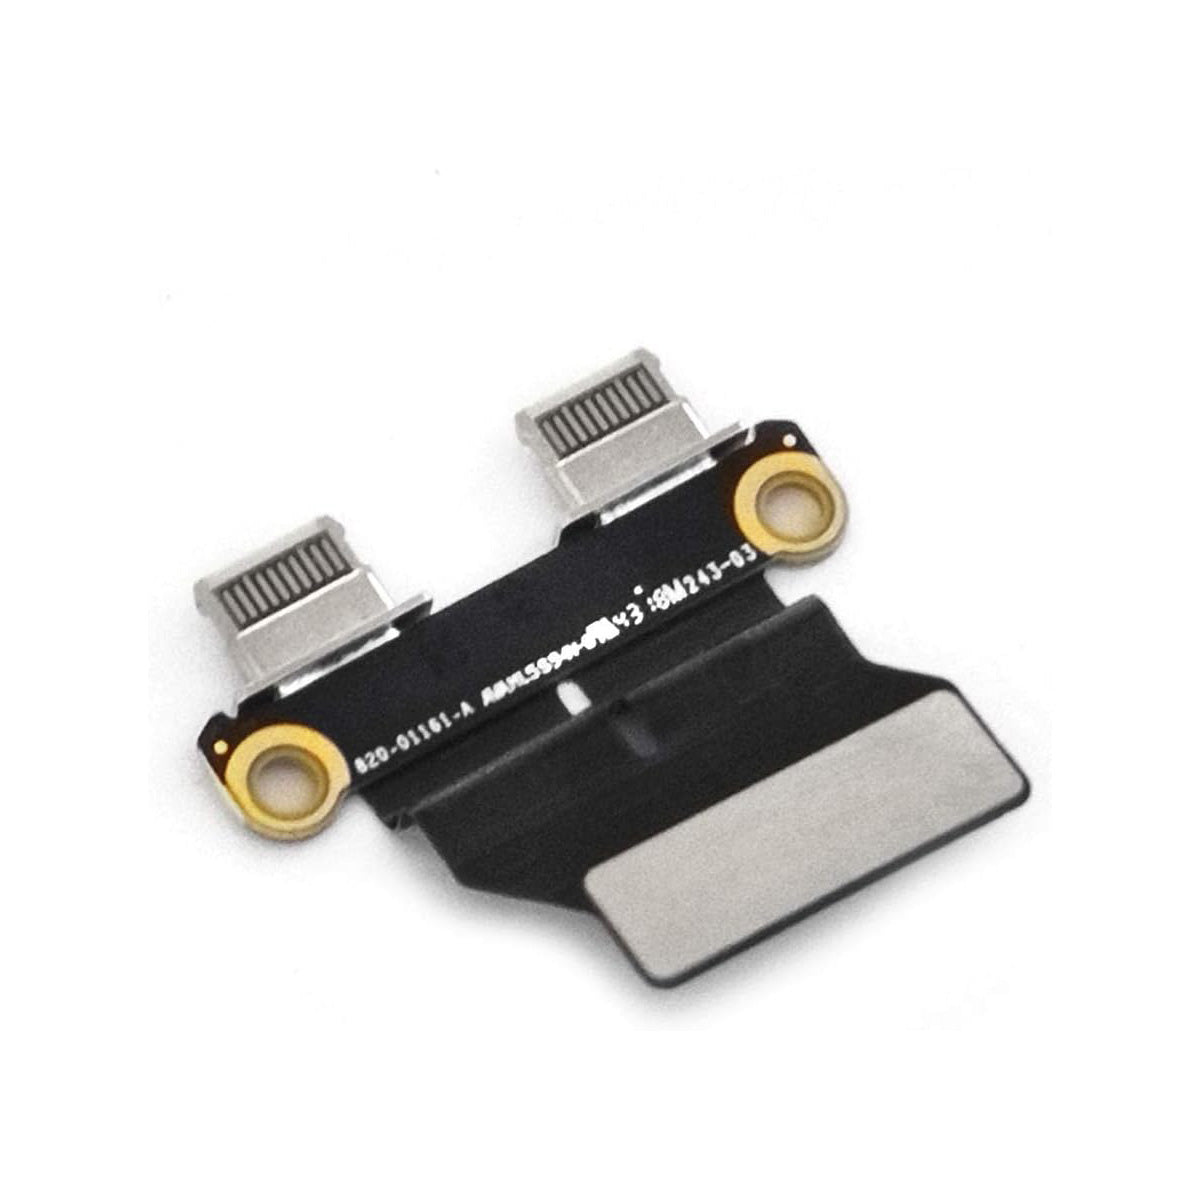 Amazon Ebay Top (SEVEN PUPPY) nuevo para Macbook Air 13 "A2337 2020 año puerto de carga alimentación DC Jack E/S tarjeta de audio USB